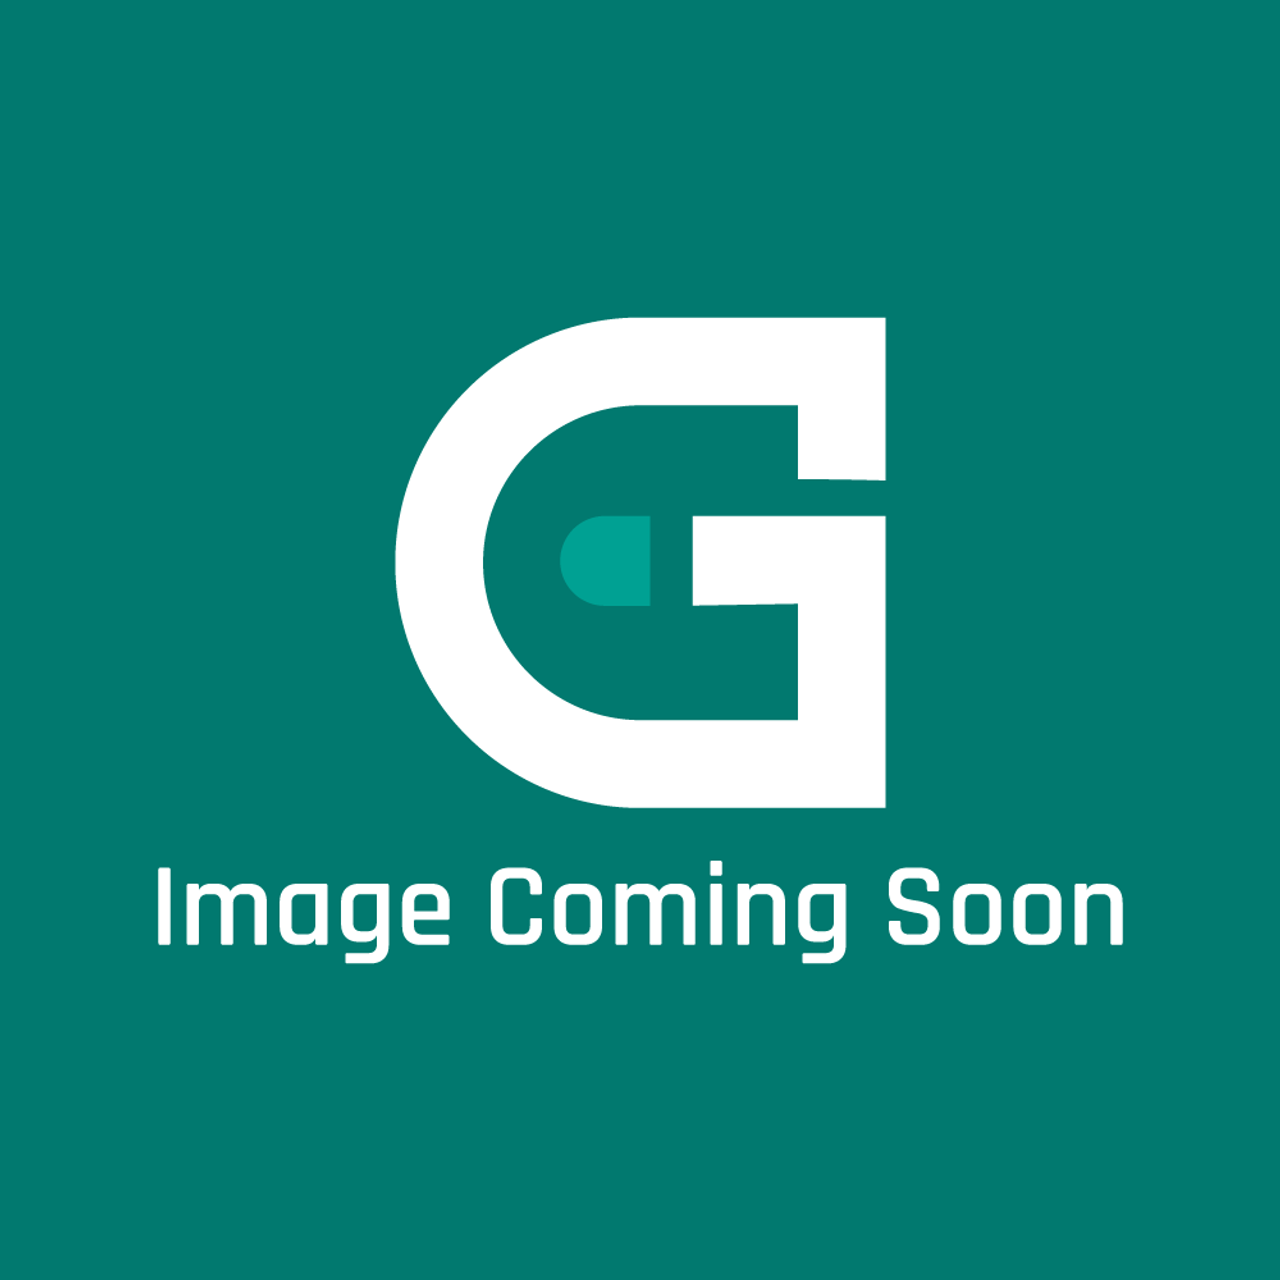 BKI (Barbeque King) G0328 - Gasket, Igniter, Fkg/Blg - Image Coming Soon!